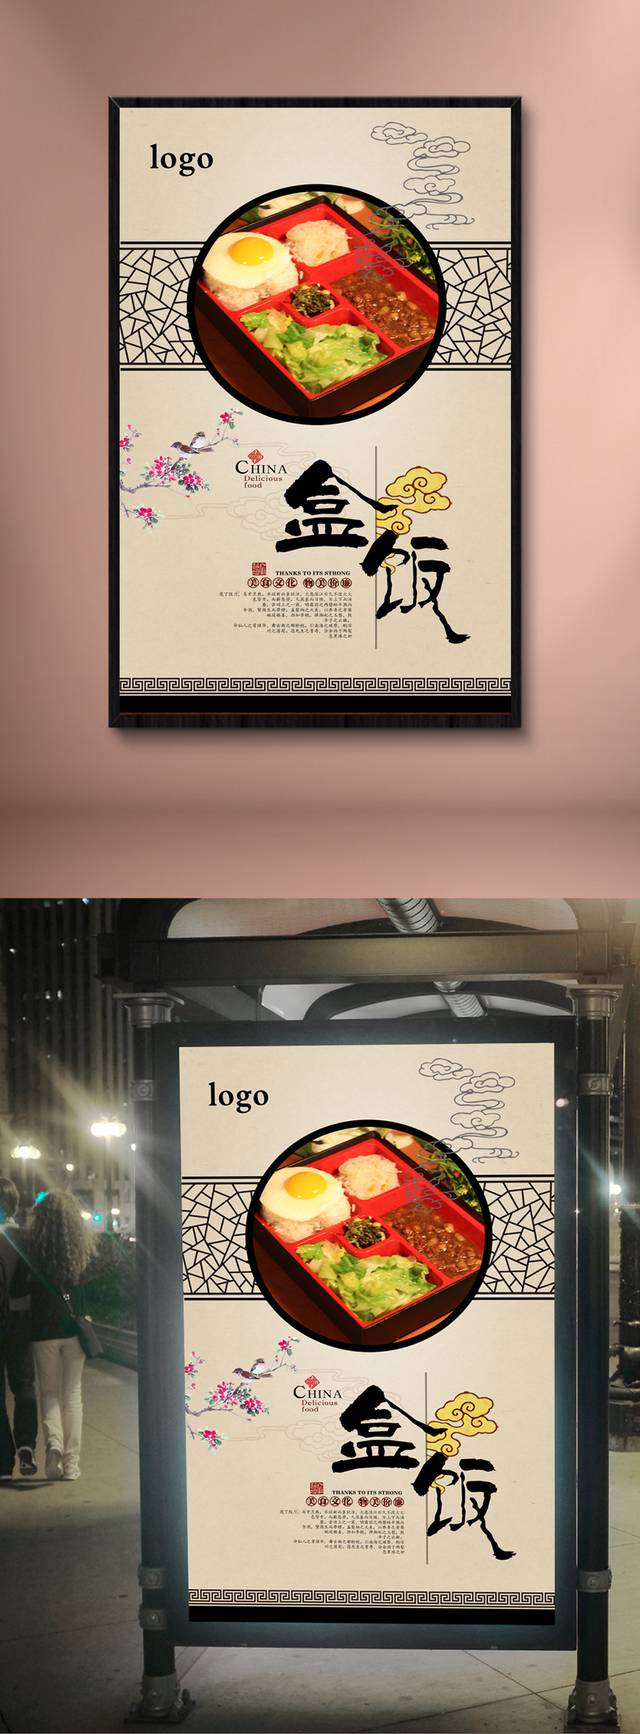 中国风盒饭宣传海报设计